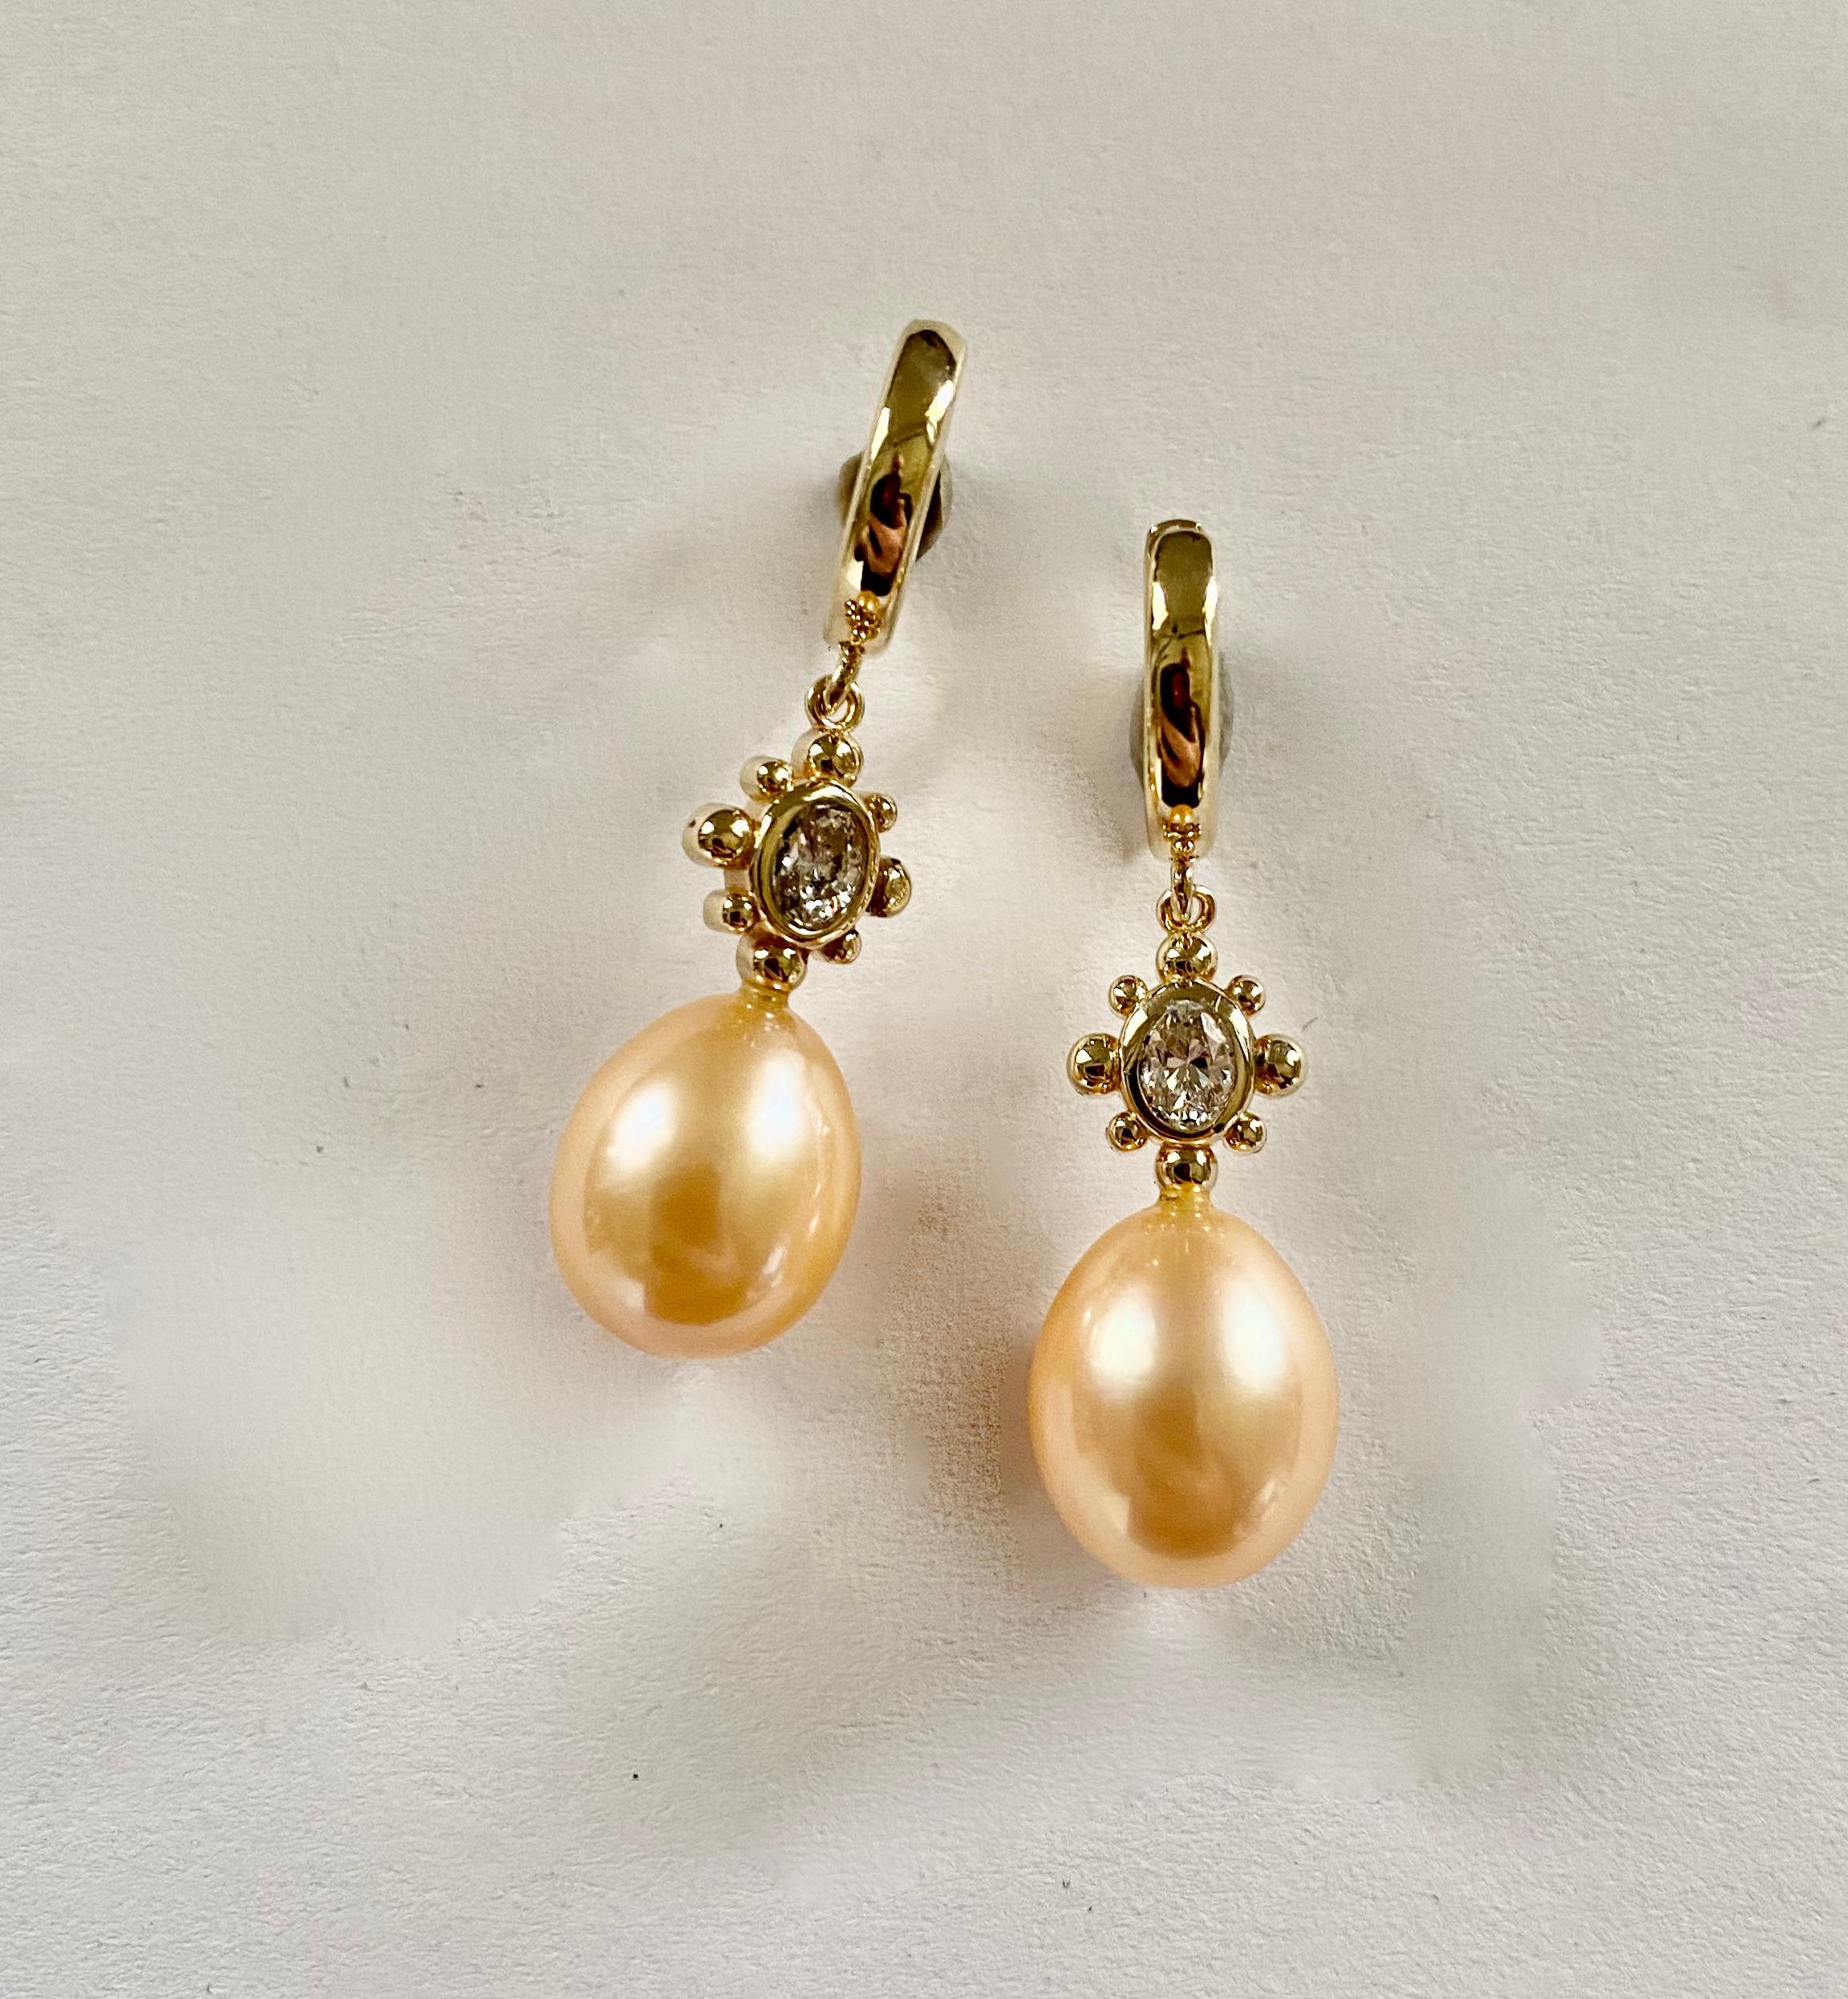 Bei diesen zierlichen Ohrringen sind rosa Perlen mit ovalen Diamanten gepaart.  Die Perlen sind birnenförmig und in einem zarten Muschelrosa gehalten. Sie sind frei von Fehlern und besitzen einen schönen Glanz.  Der Entwurf für diese Ohrringe wurde